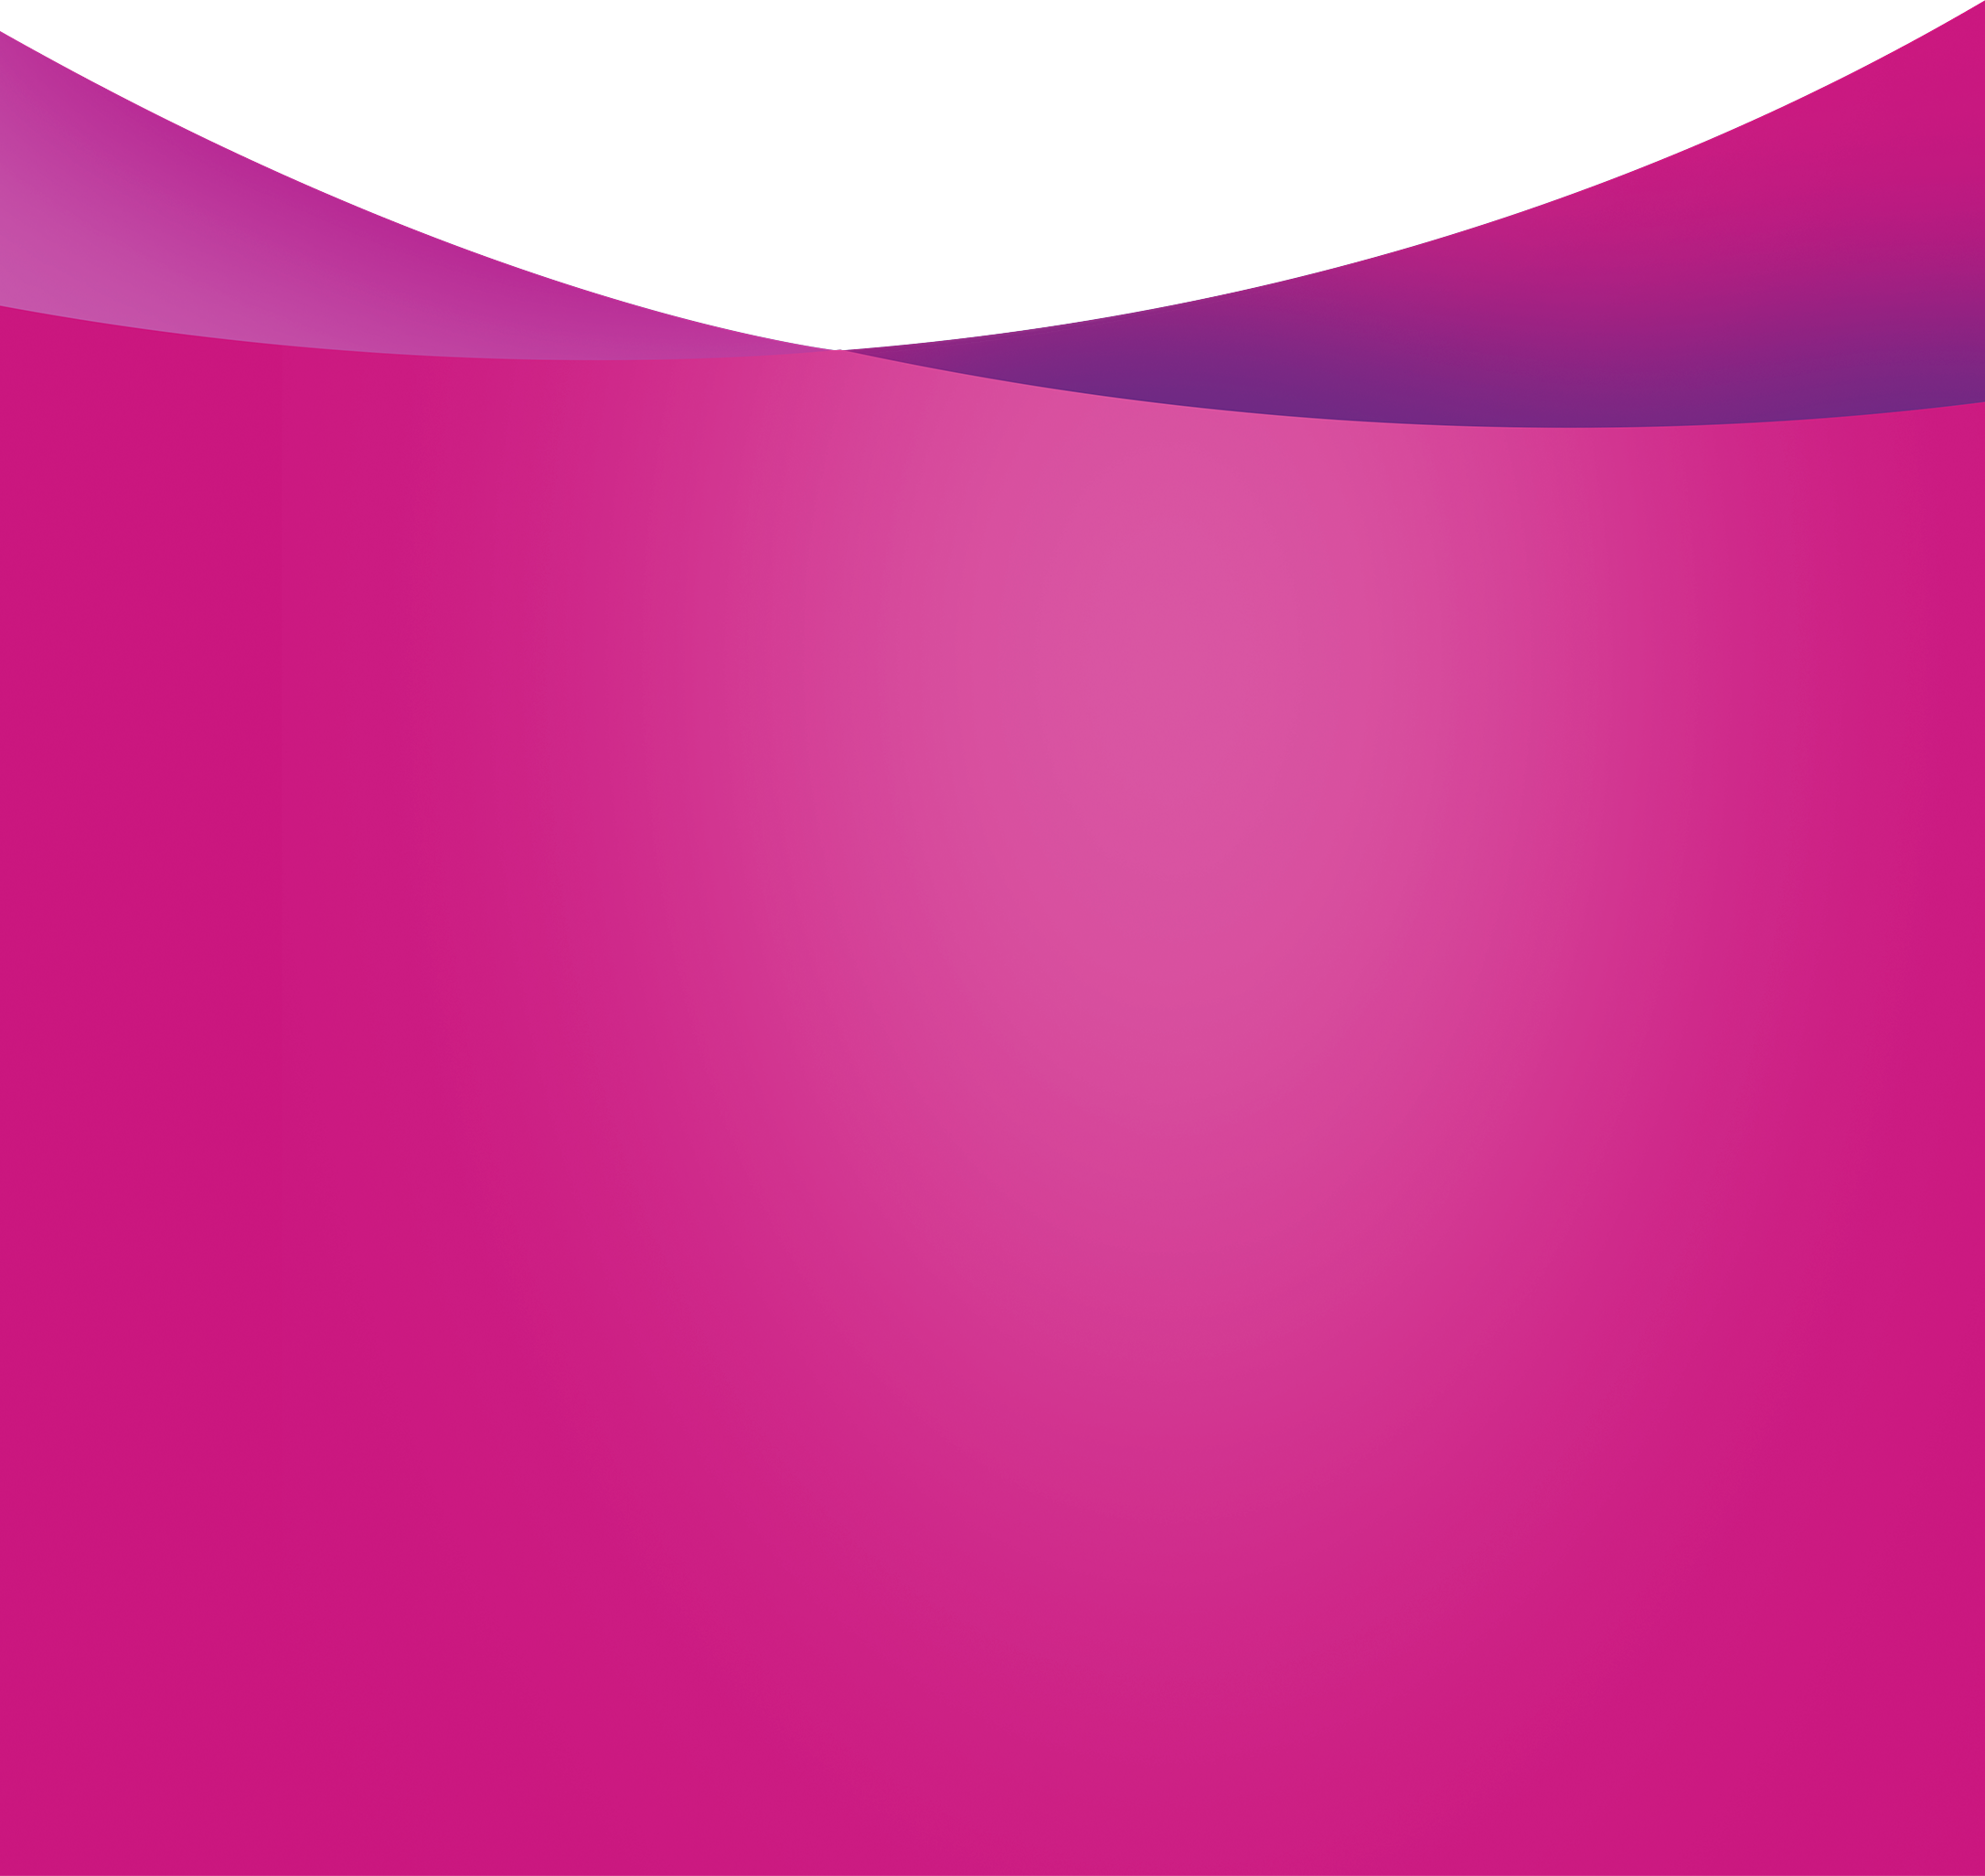 Pink gradient background